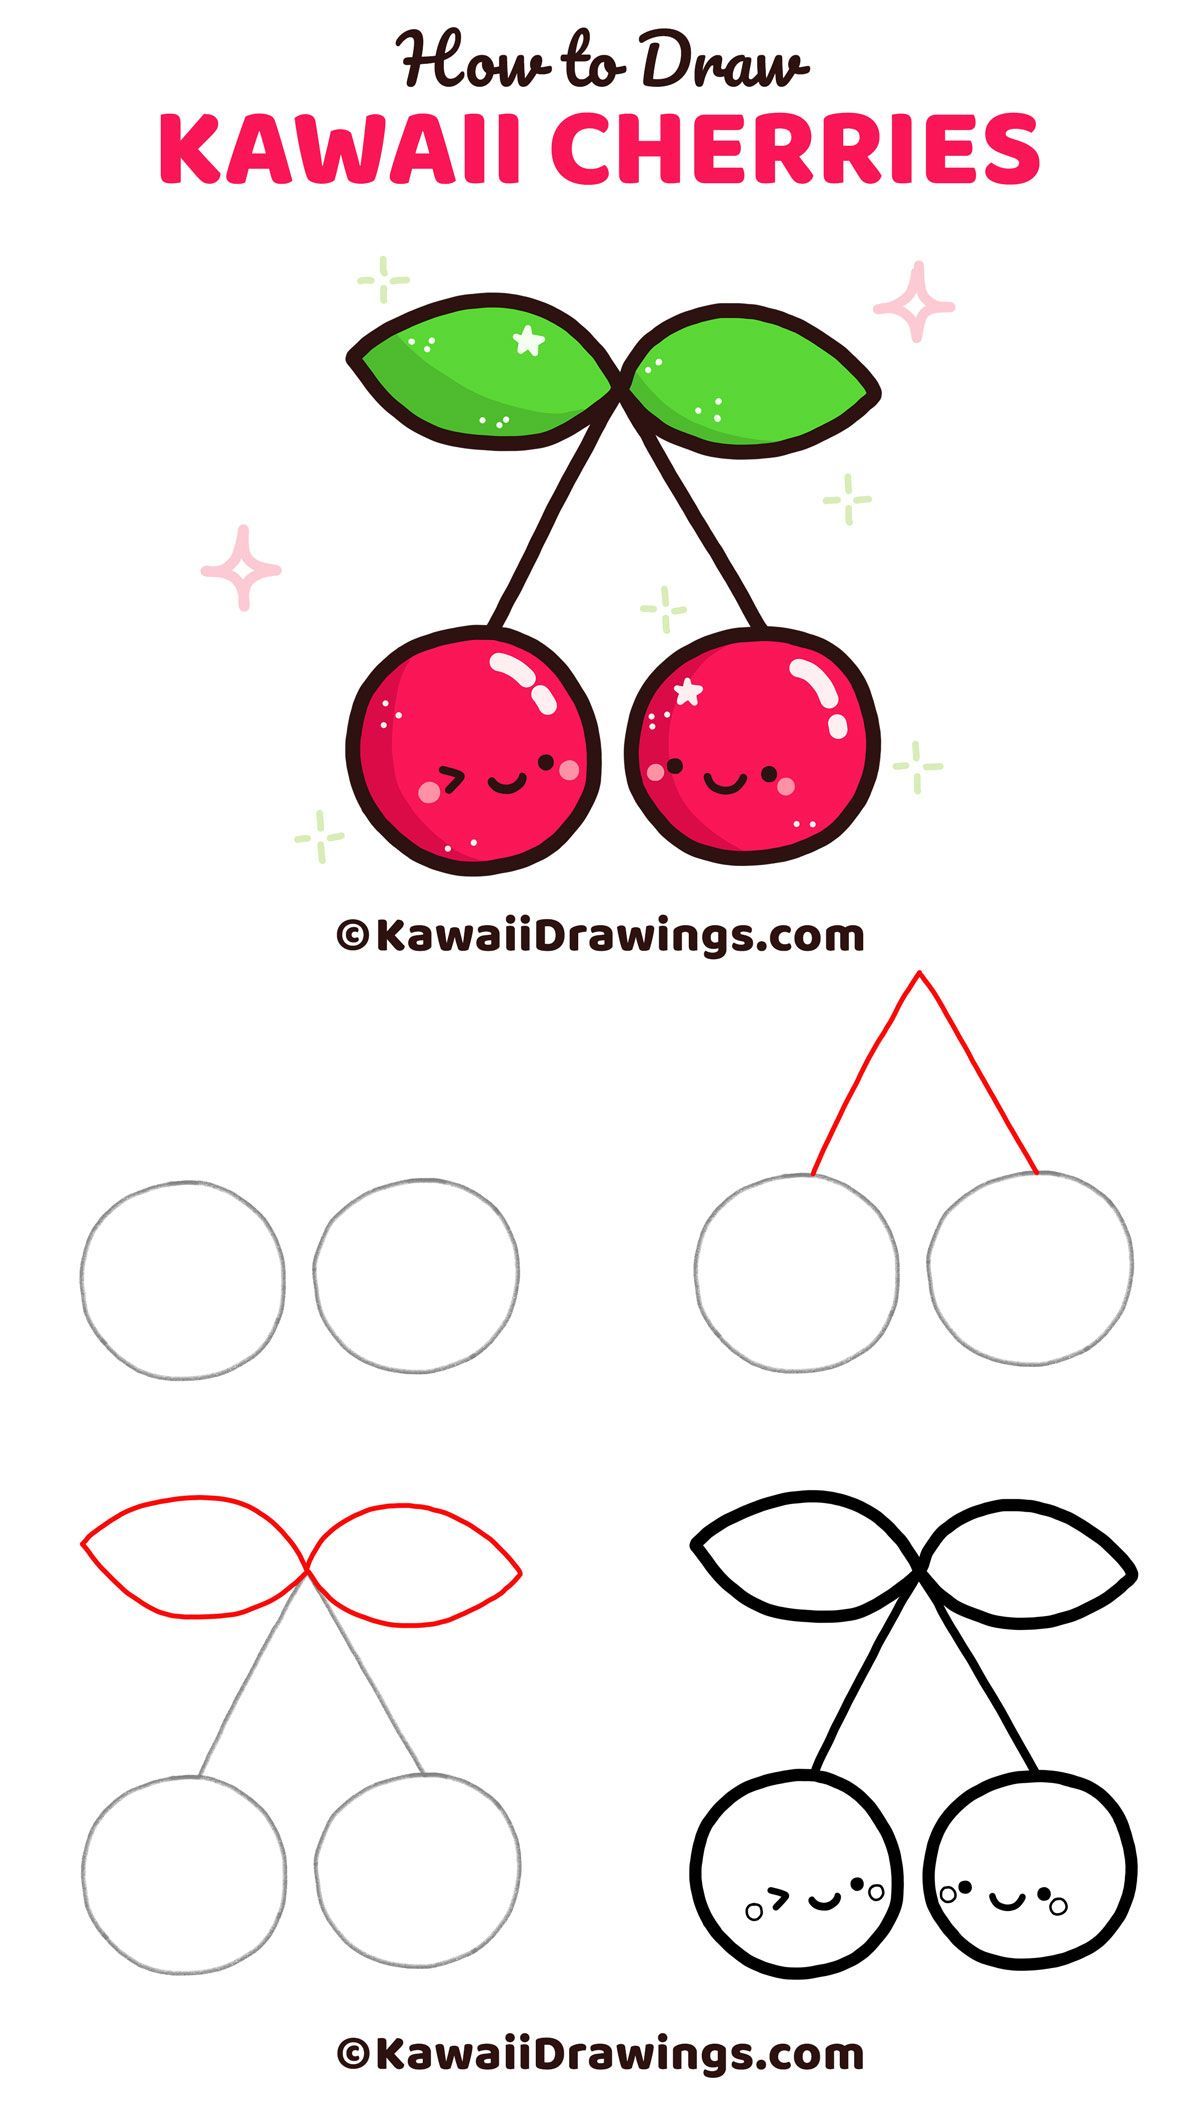 Wie zeichnet man Kawaii Kirschen